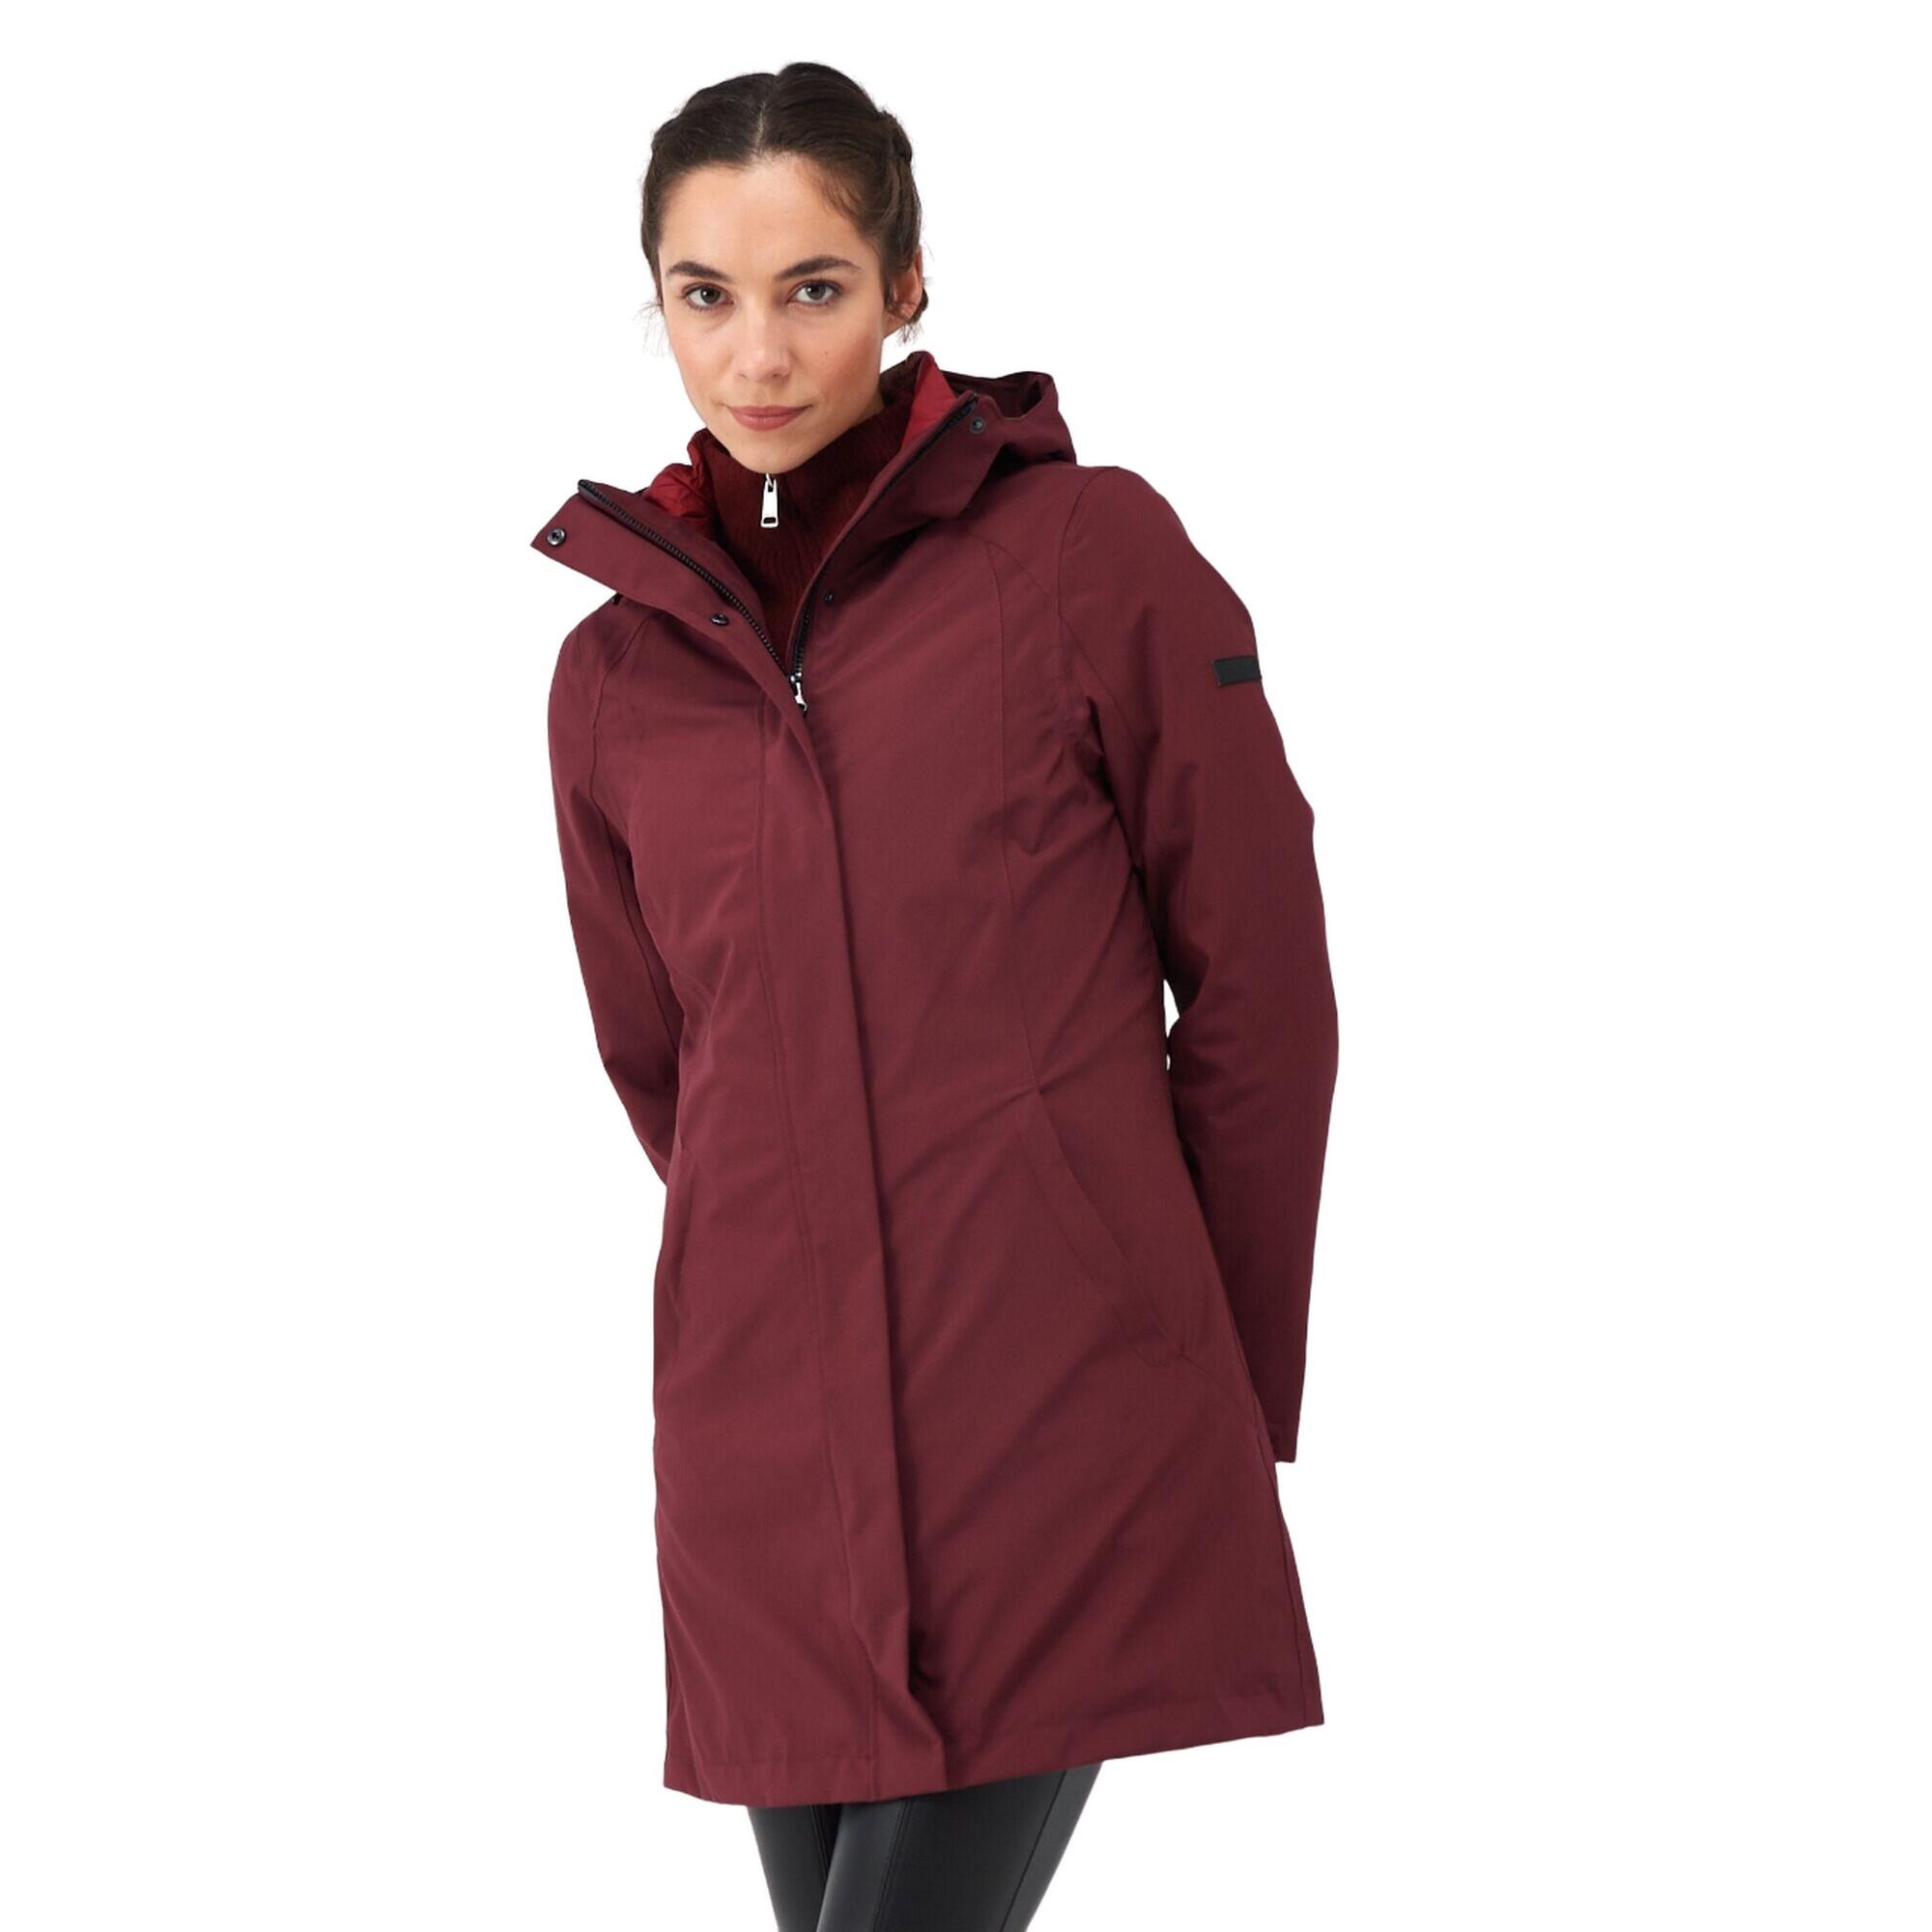 Womens/Ladies Denbury IV 2 In 1 Waterproof Jacket (Burgundy/Rumba Red) 3/5